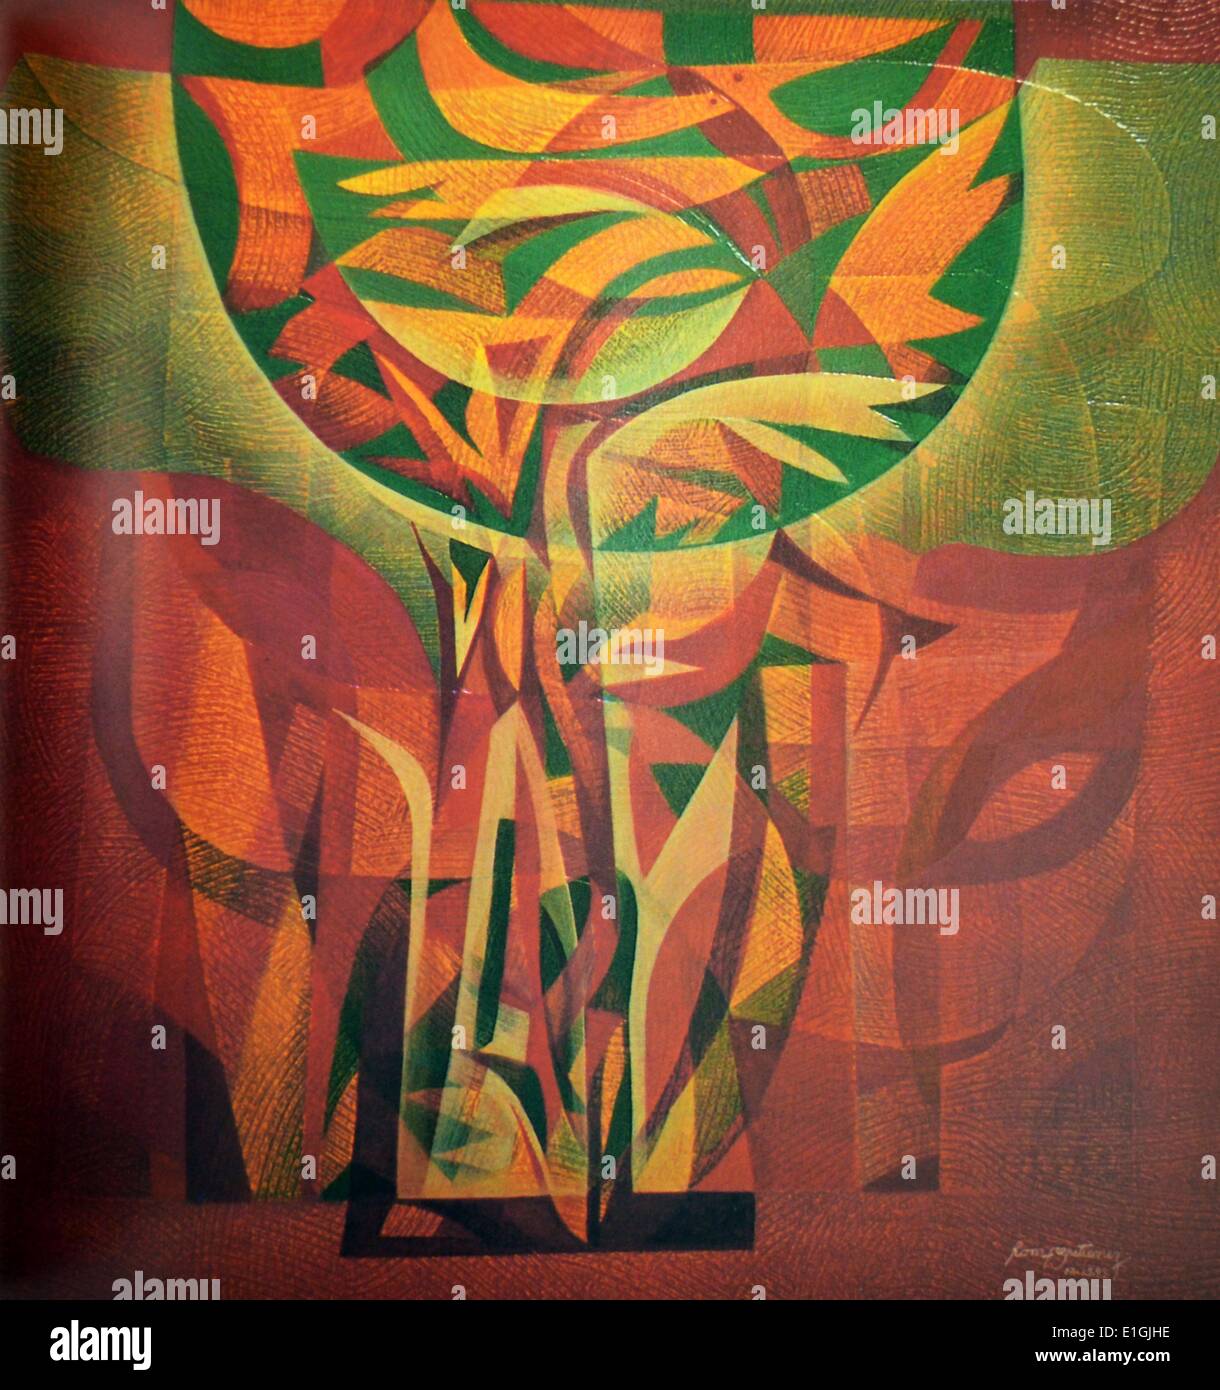 Romeo E Gutierrez, Baum des Lebens, 1993, Öl auf Leinwand. Stockfoto